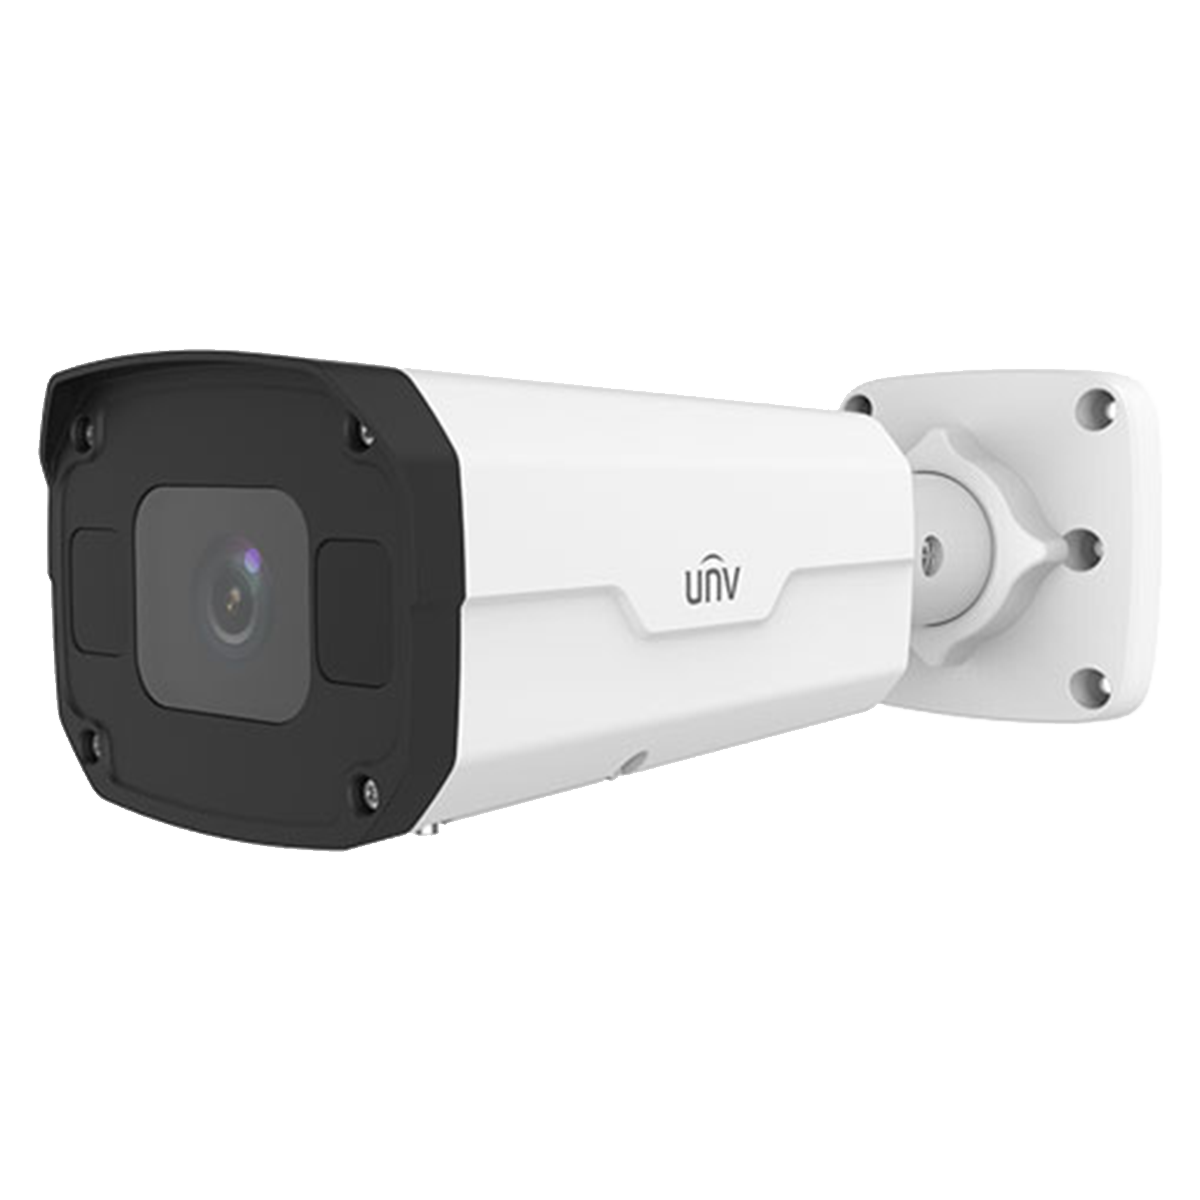 2MP HD LightHunter IR VF Bullet Network Camera